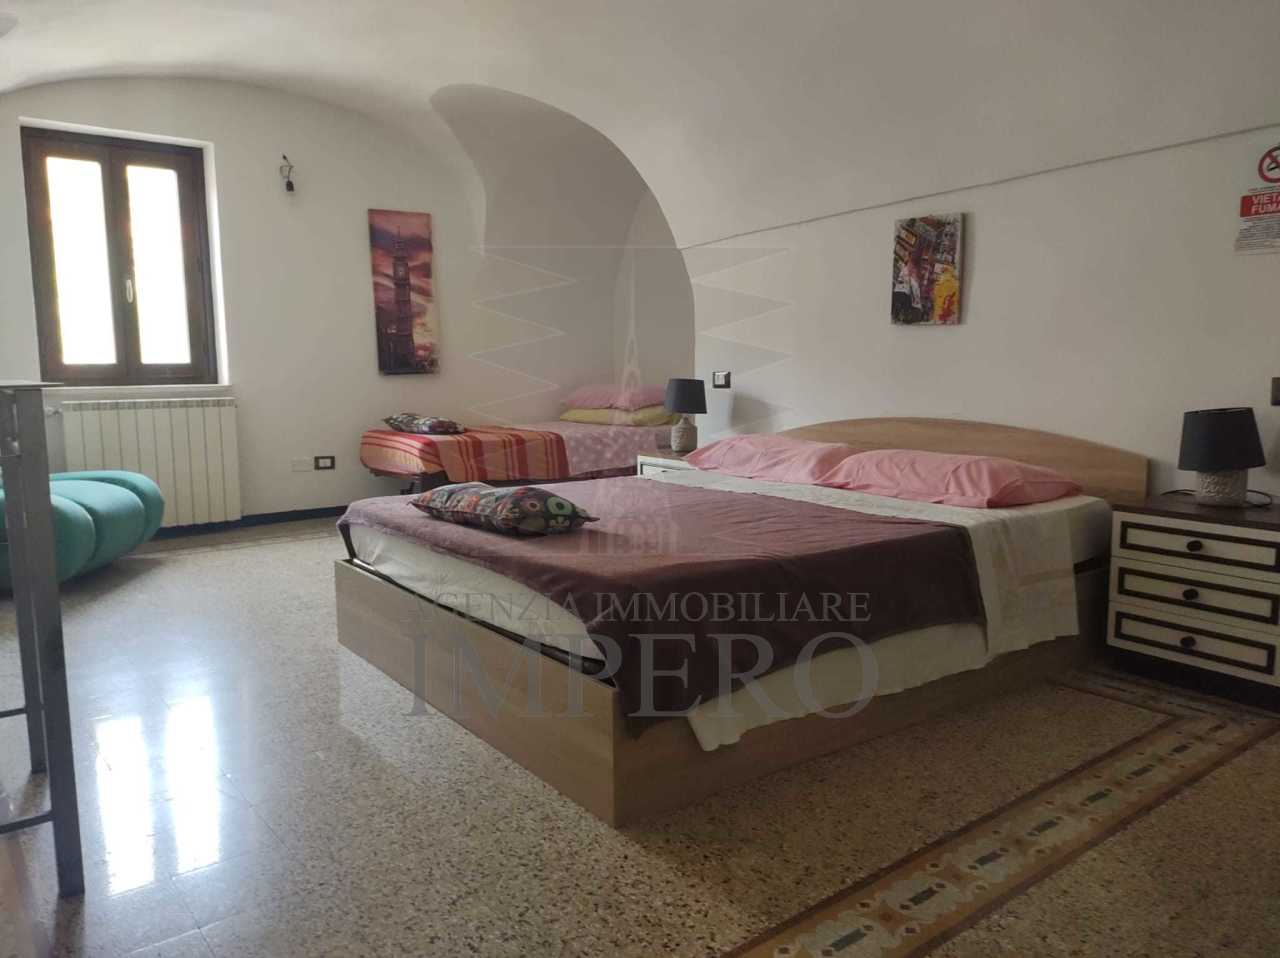 Appartamento in vendita a Dolceacqua, 3 locali, prezzo € 90.000 | PortaleAgenzieImmobiliari.it